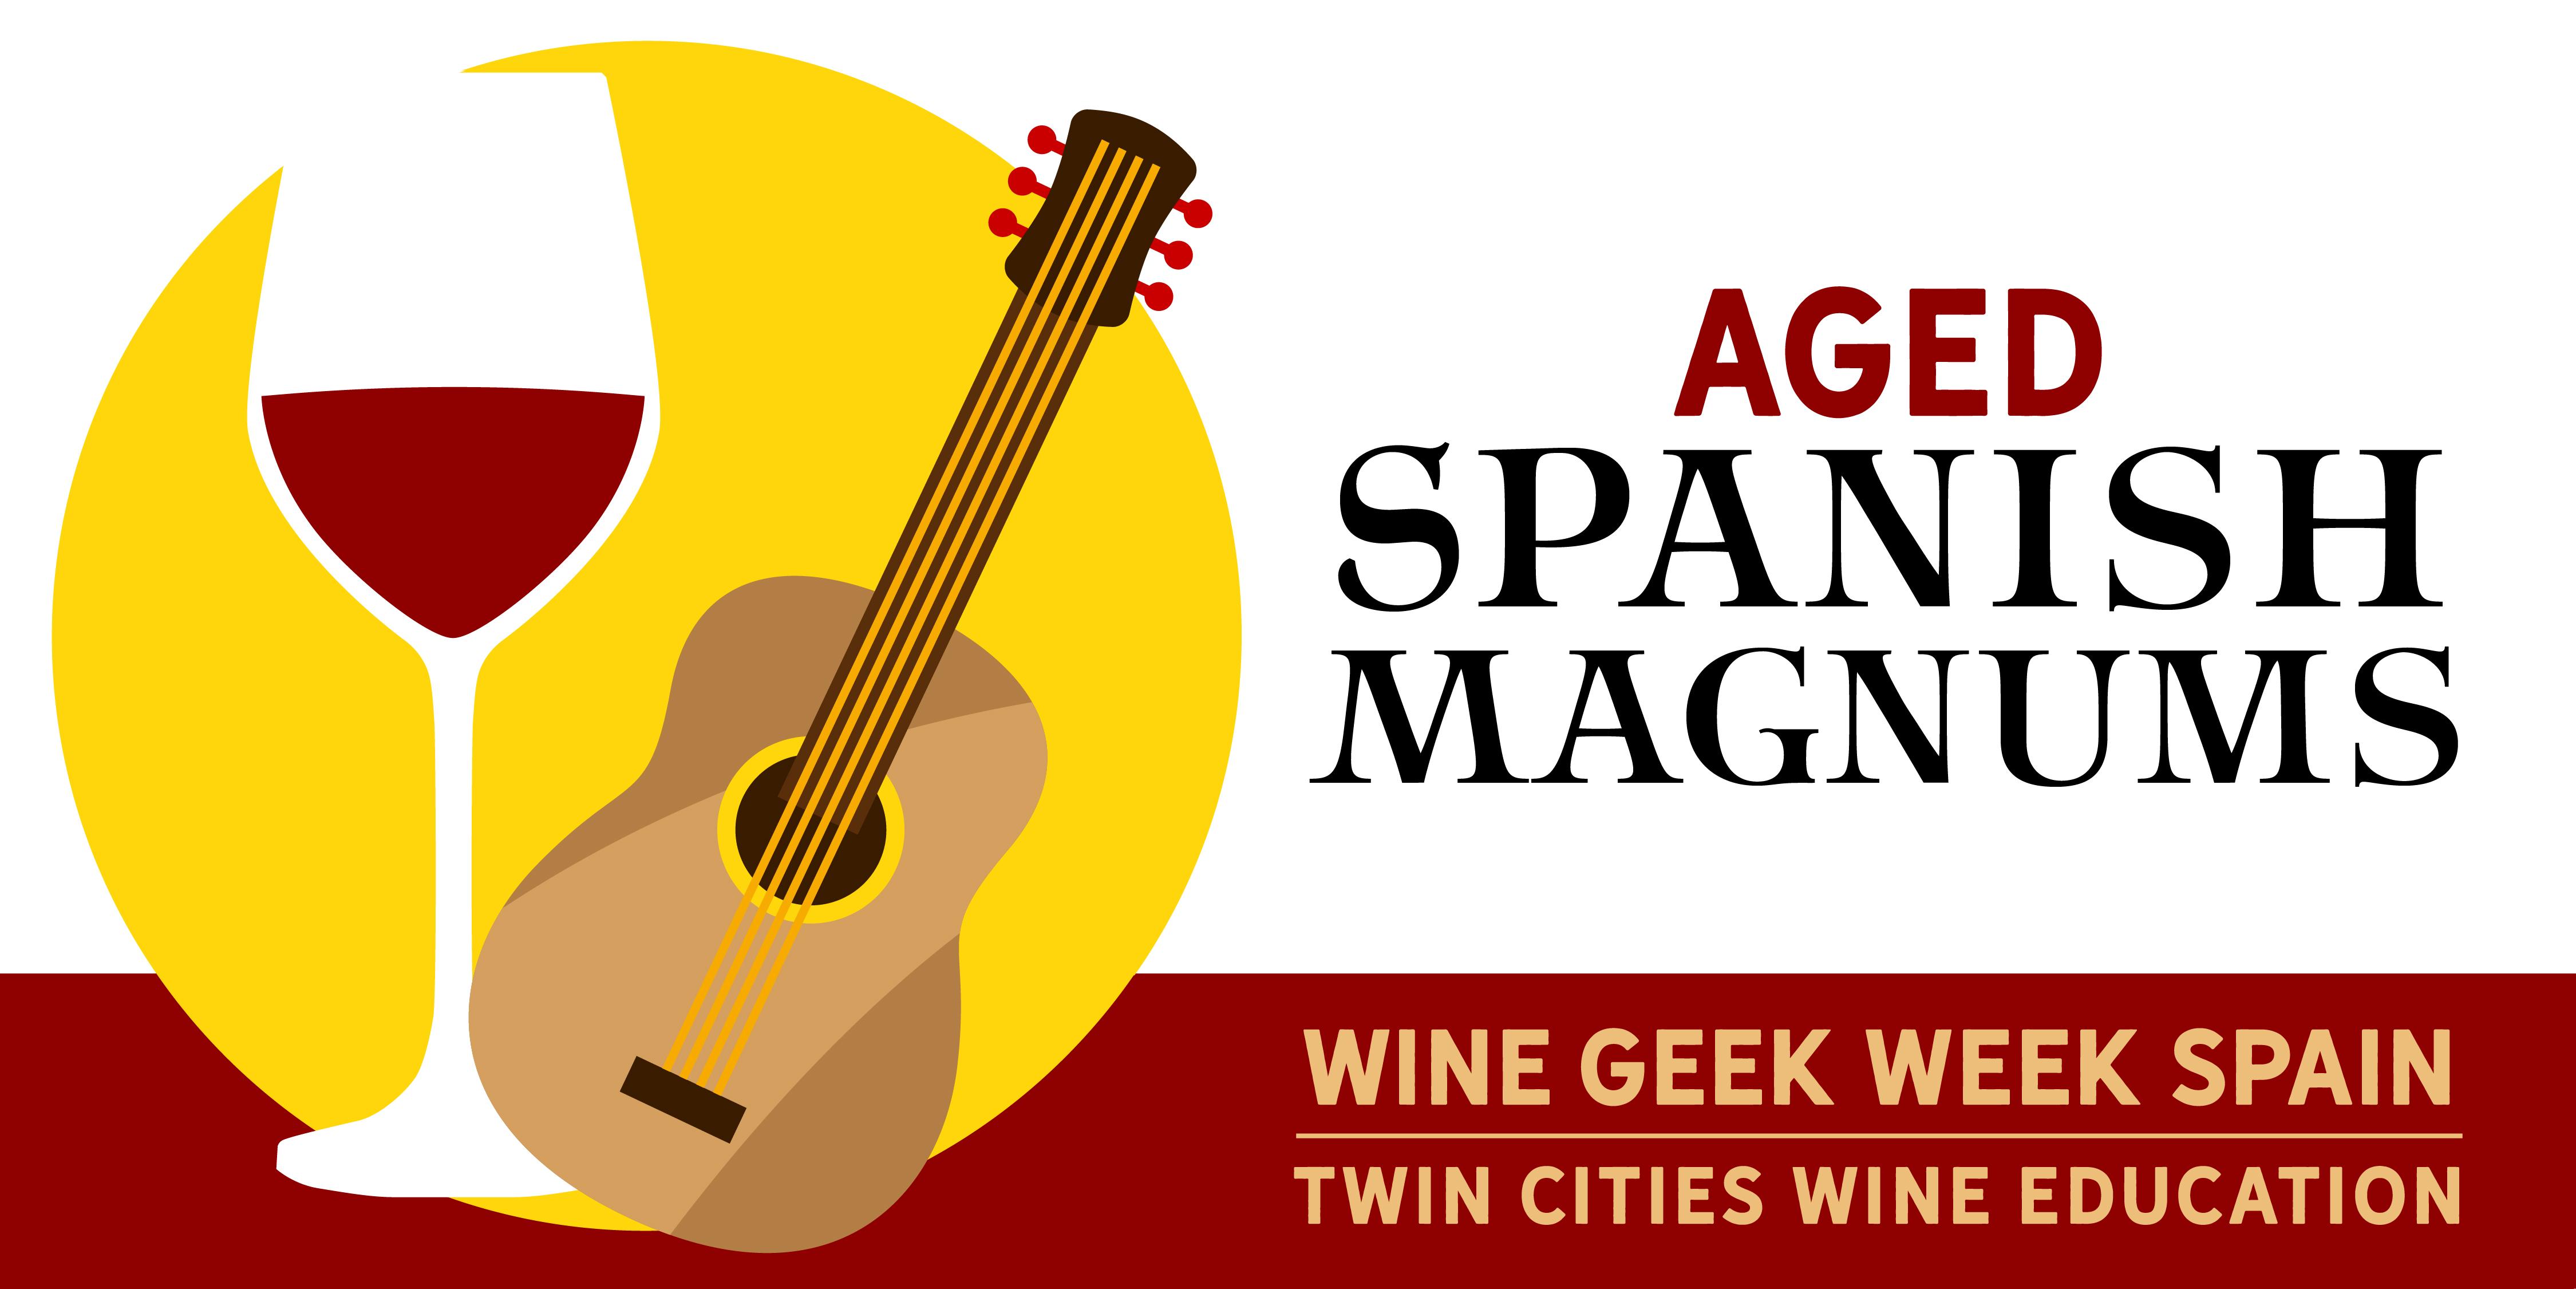 Wine Geek Week: Spain - AGED SPANISH MAGNUMS